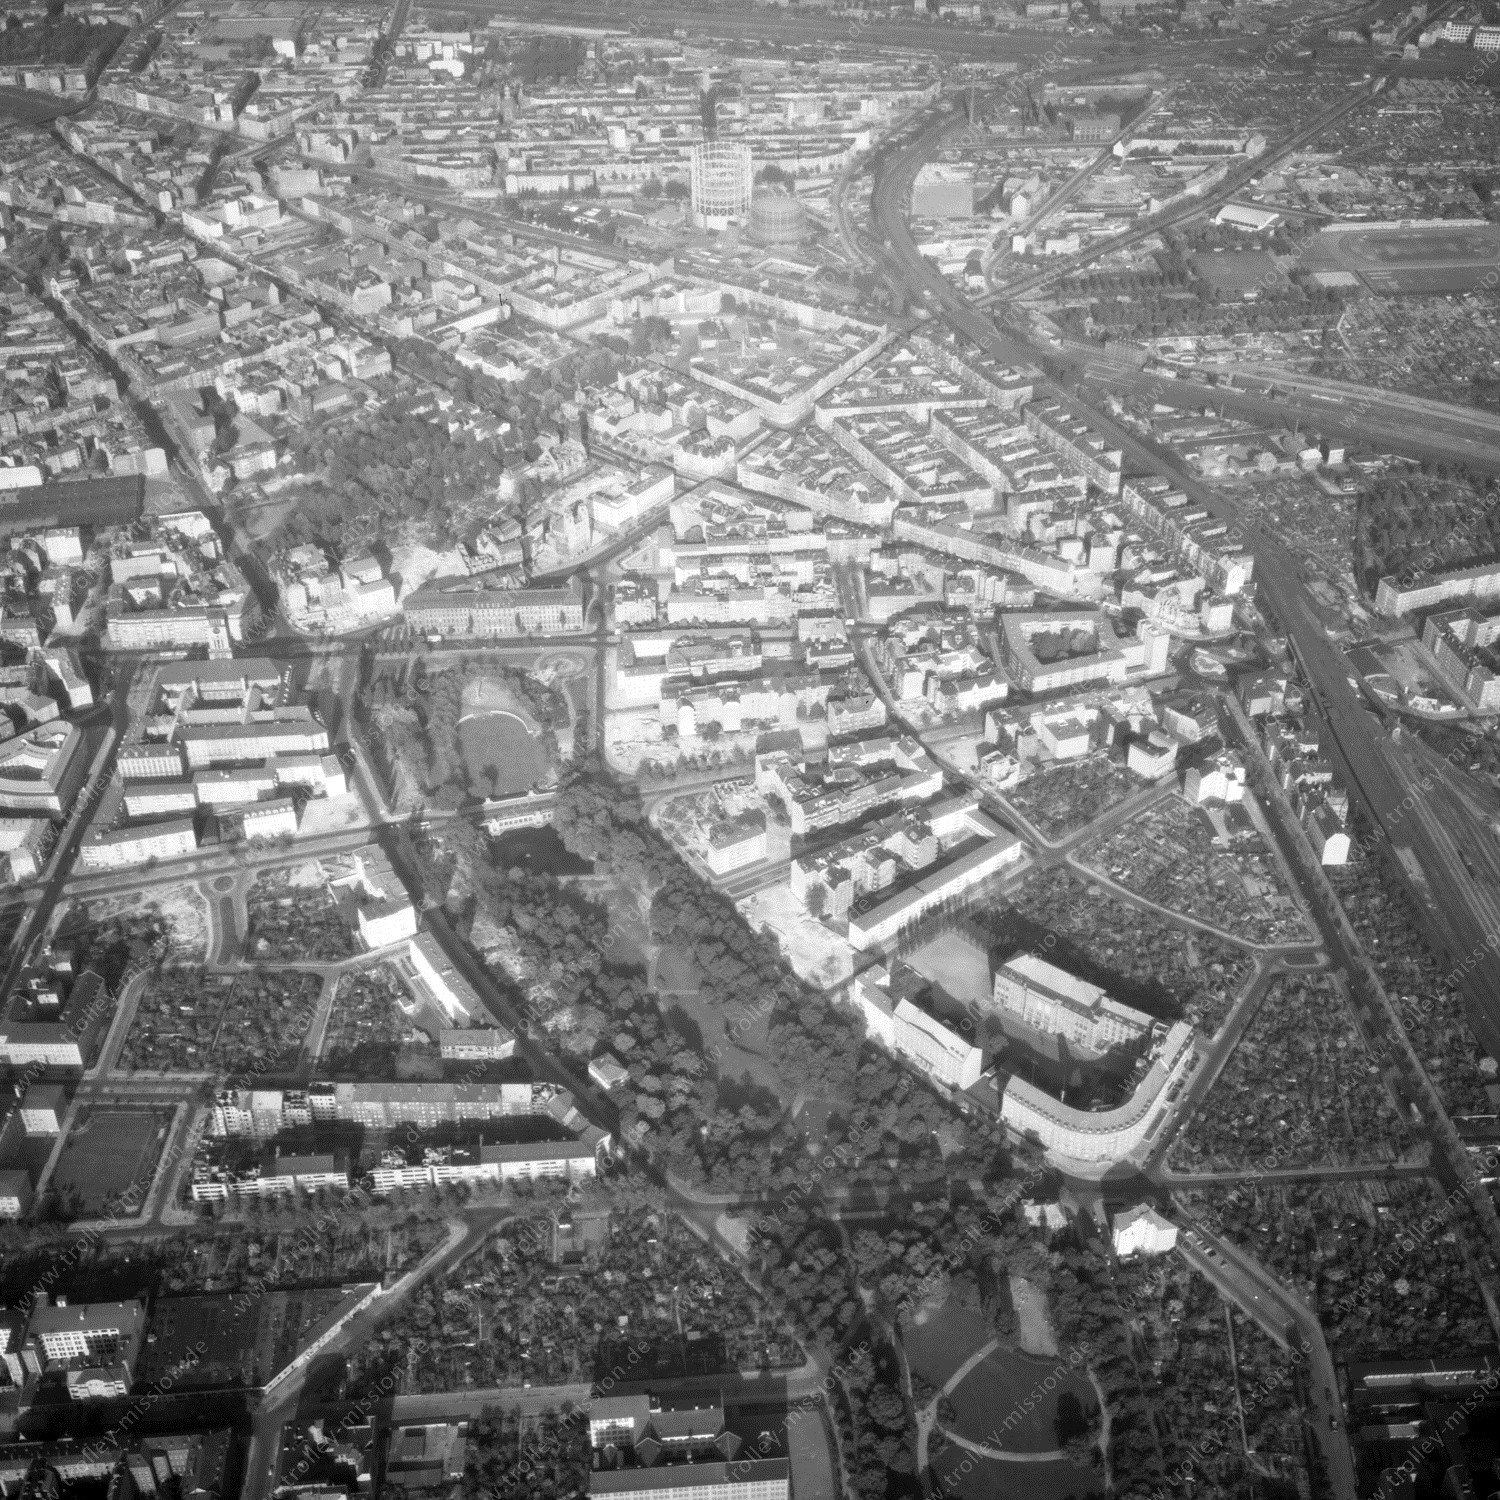 Alte Fotos und Luftbilder von Berlin - Luftbildaufnahme Nr. 01 - Historische Luftaufnahmen von West-Berlin aus dem Jahr 1954 - Flugstrecke Echo